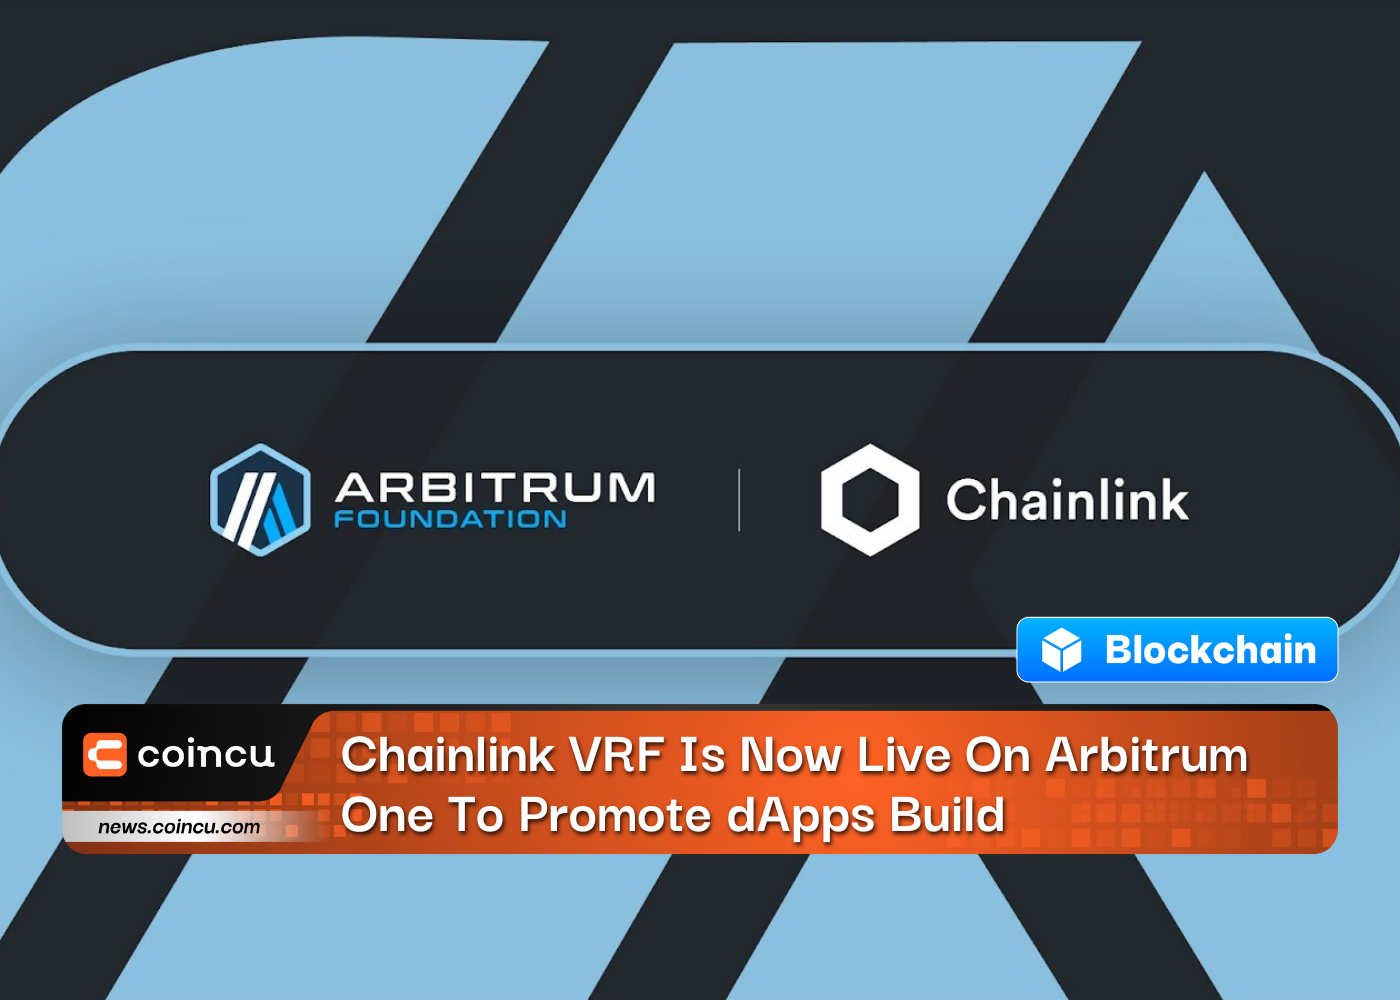 Chainlink VRF теперь работает на Arbitrum One для продвижения сборки dApps